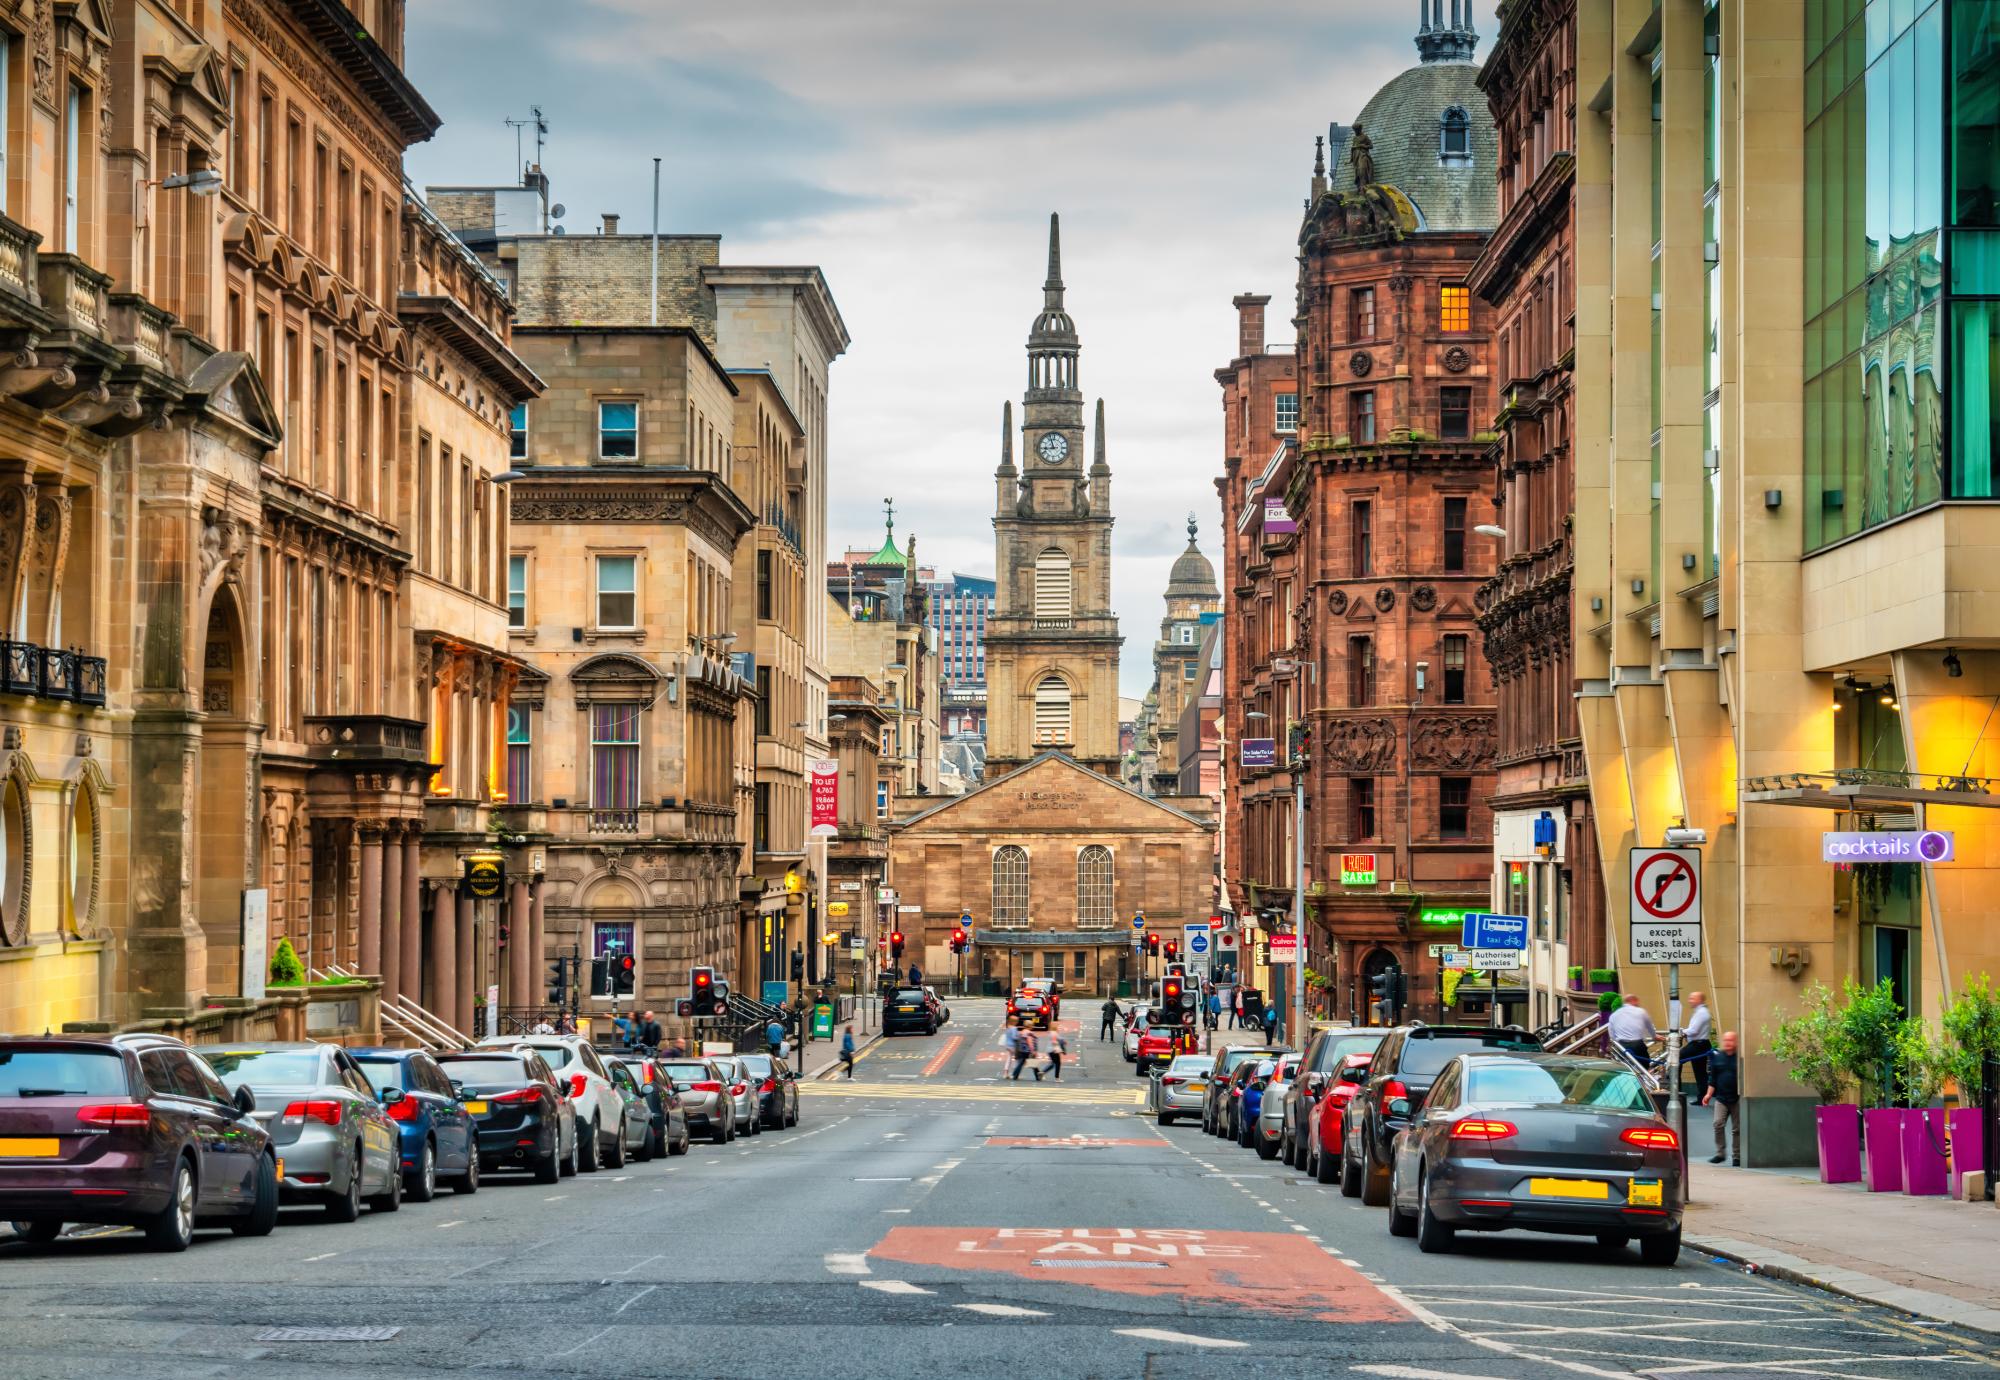 downtown Glasgow, Scotland.